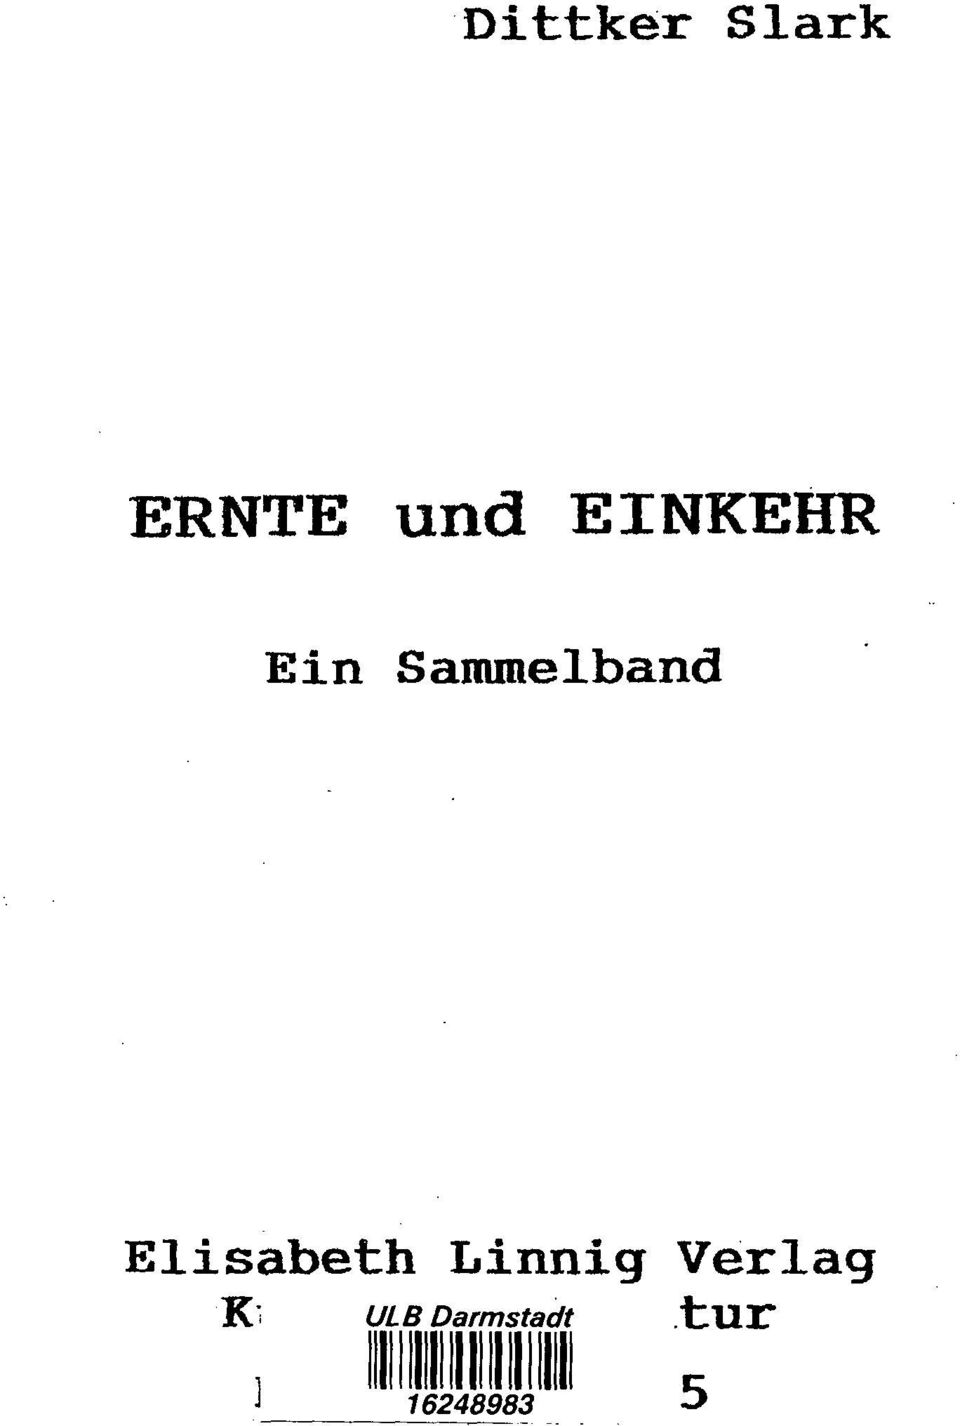 Elisabeth Linnig Verlag